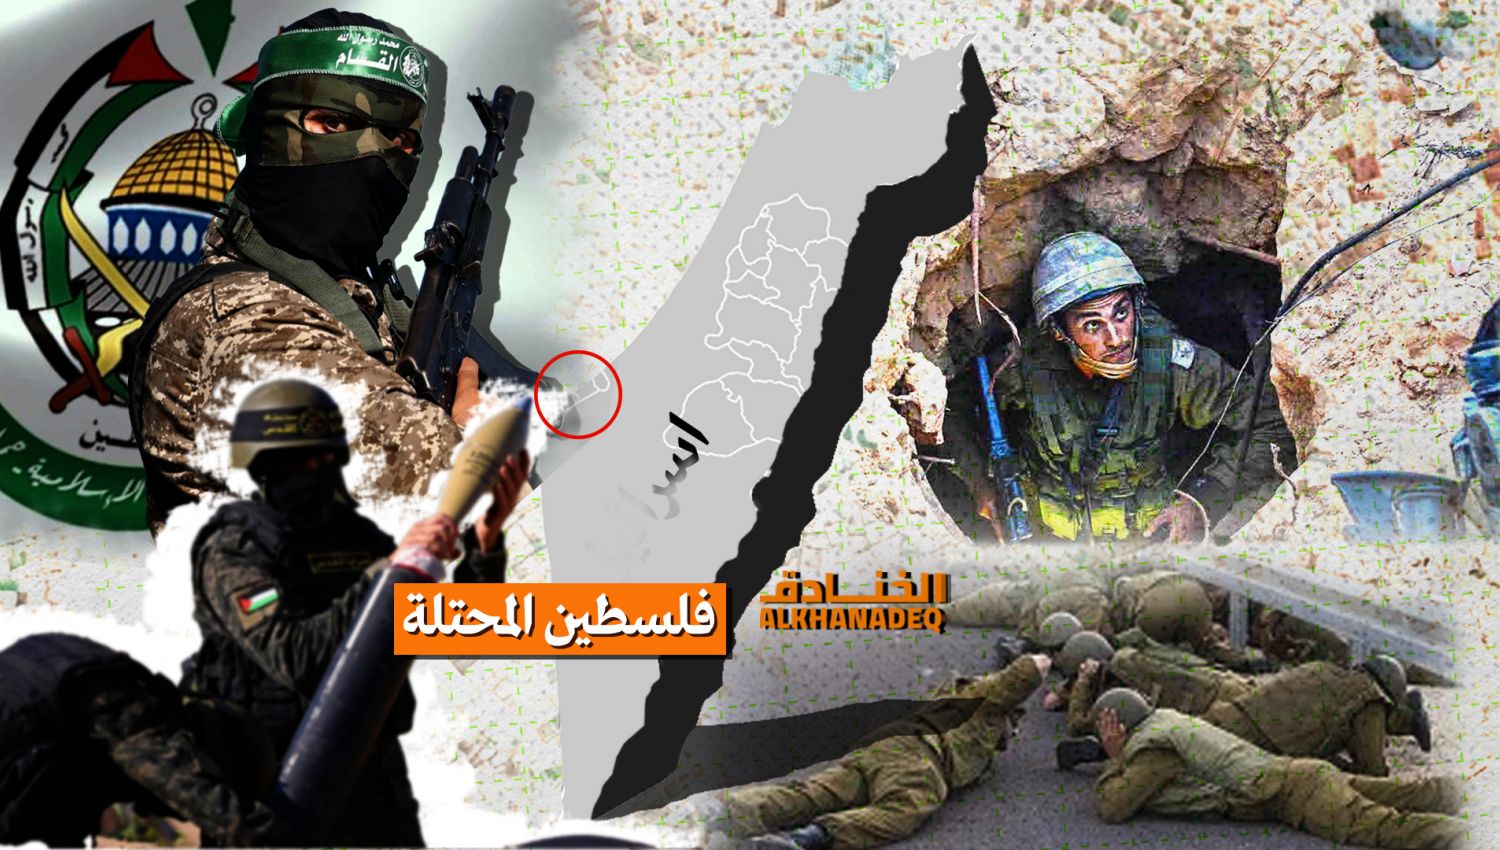 إسرائيل اليوم: حماس لا تخاف "إسرائيل" بل لا تريدها على الخريطة